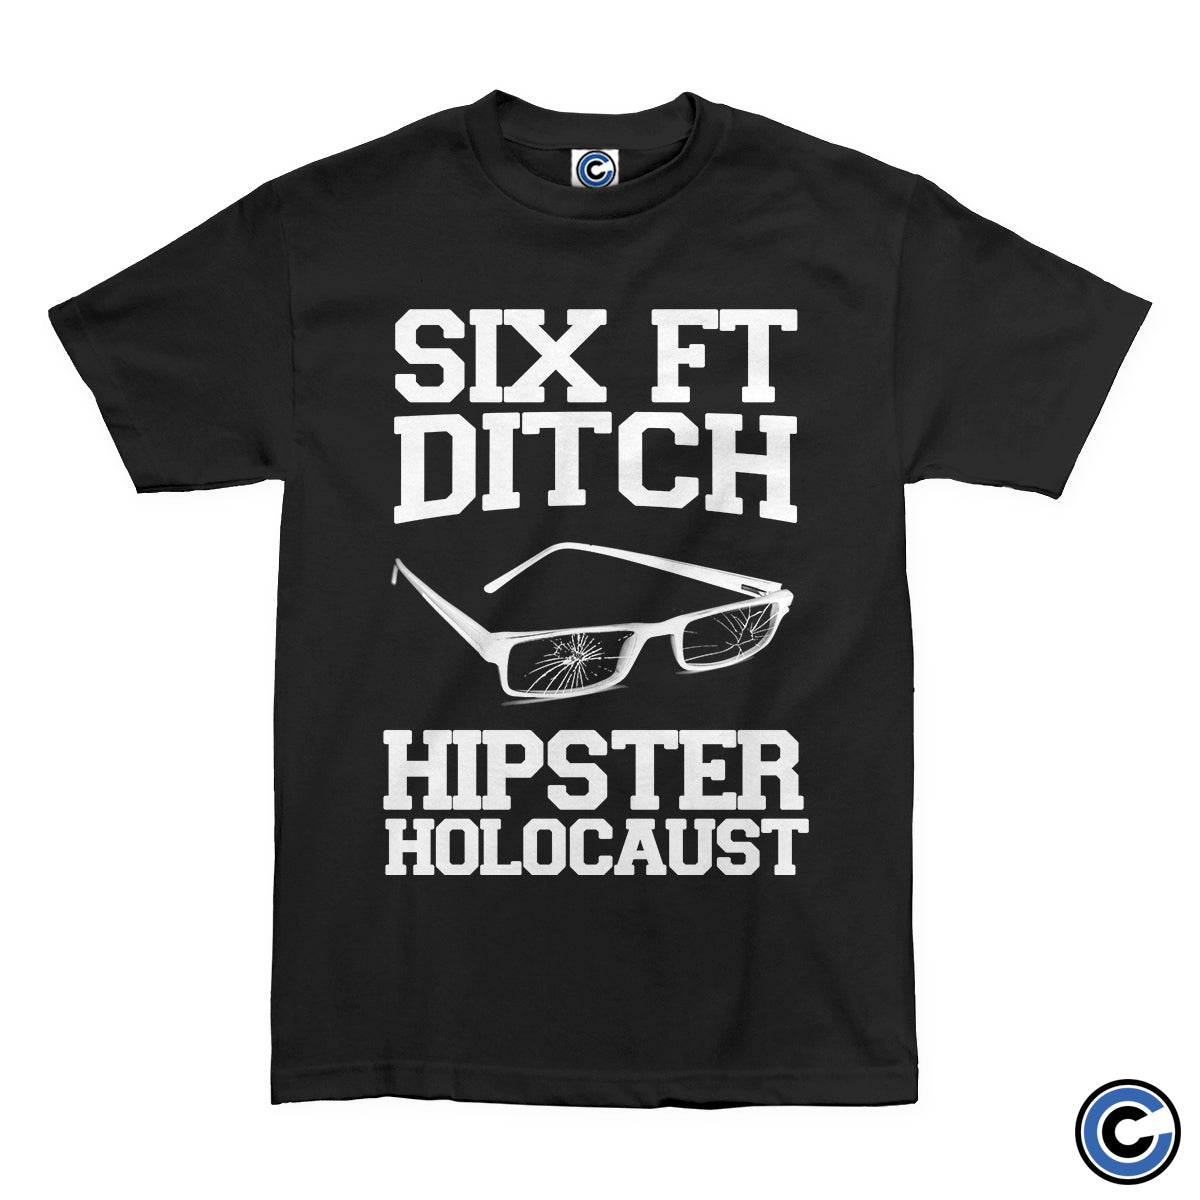 Six Ft Ditch "Hipster" Shirt